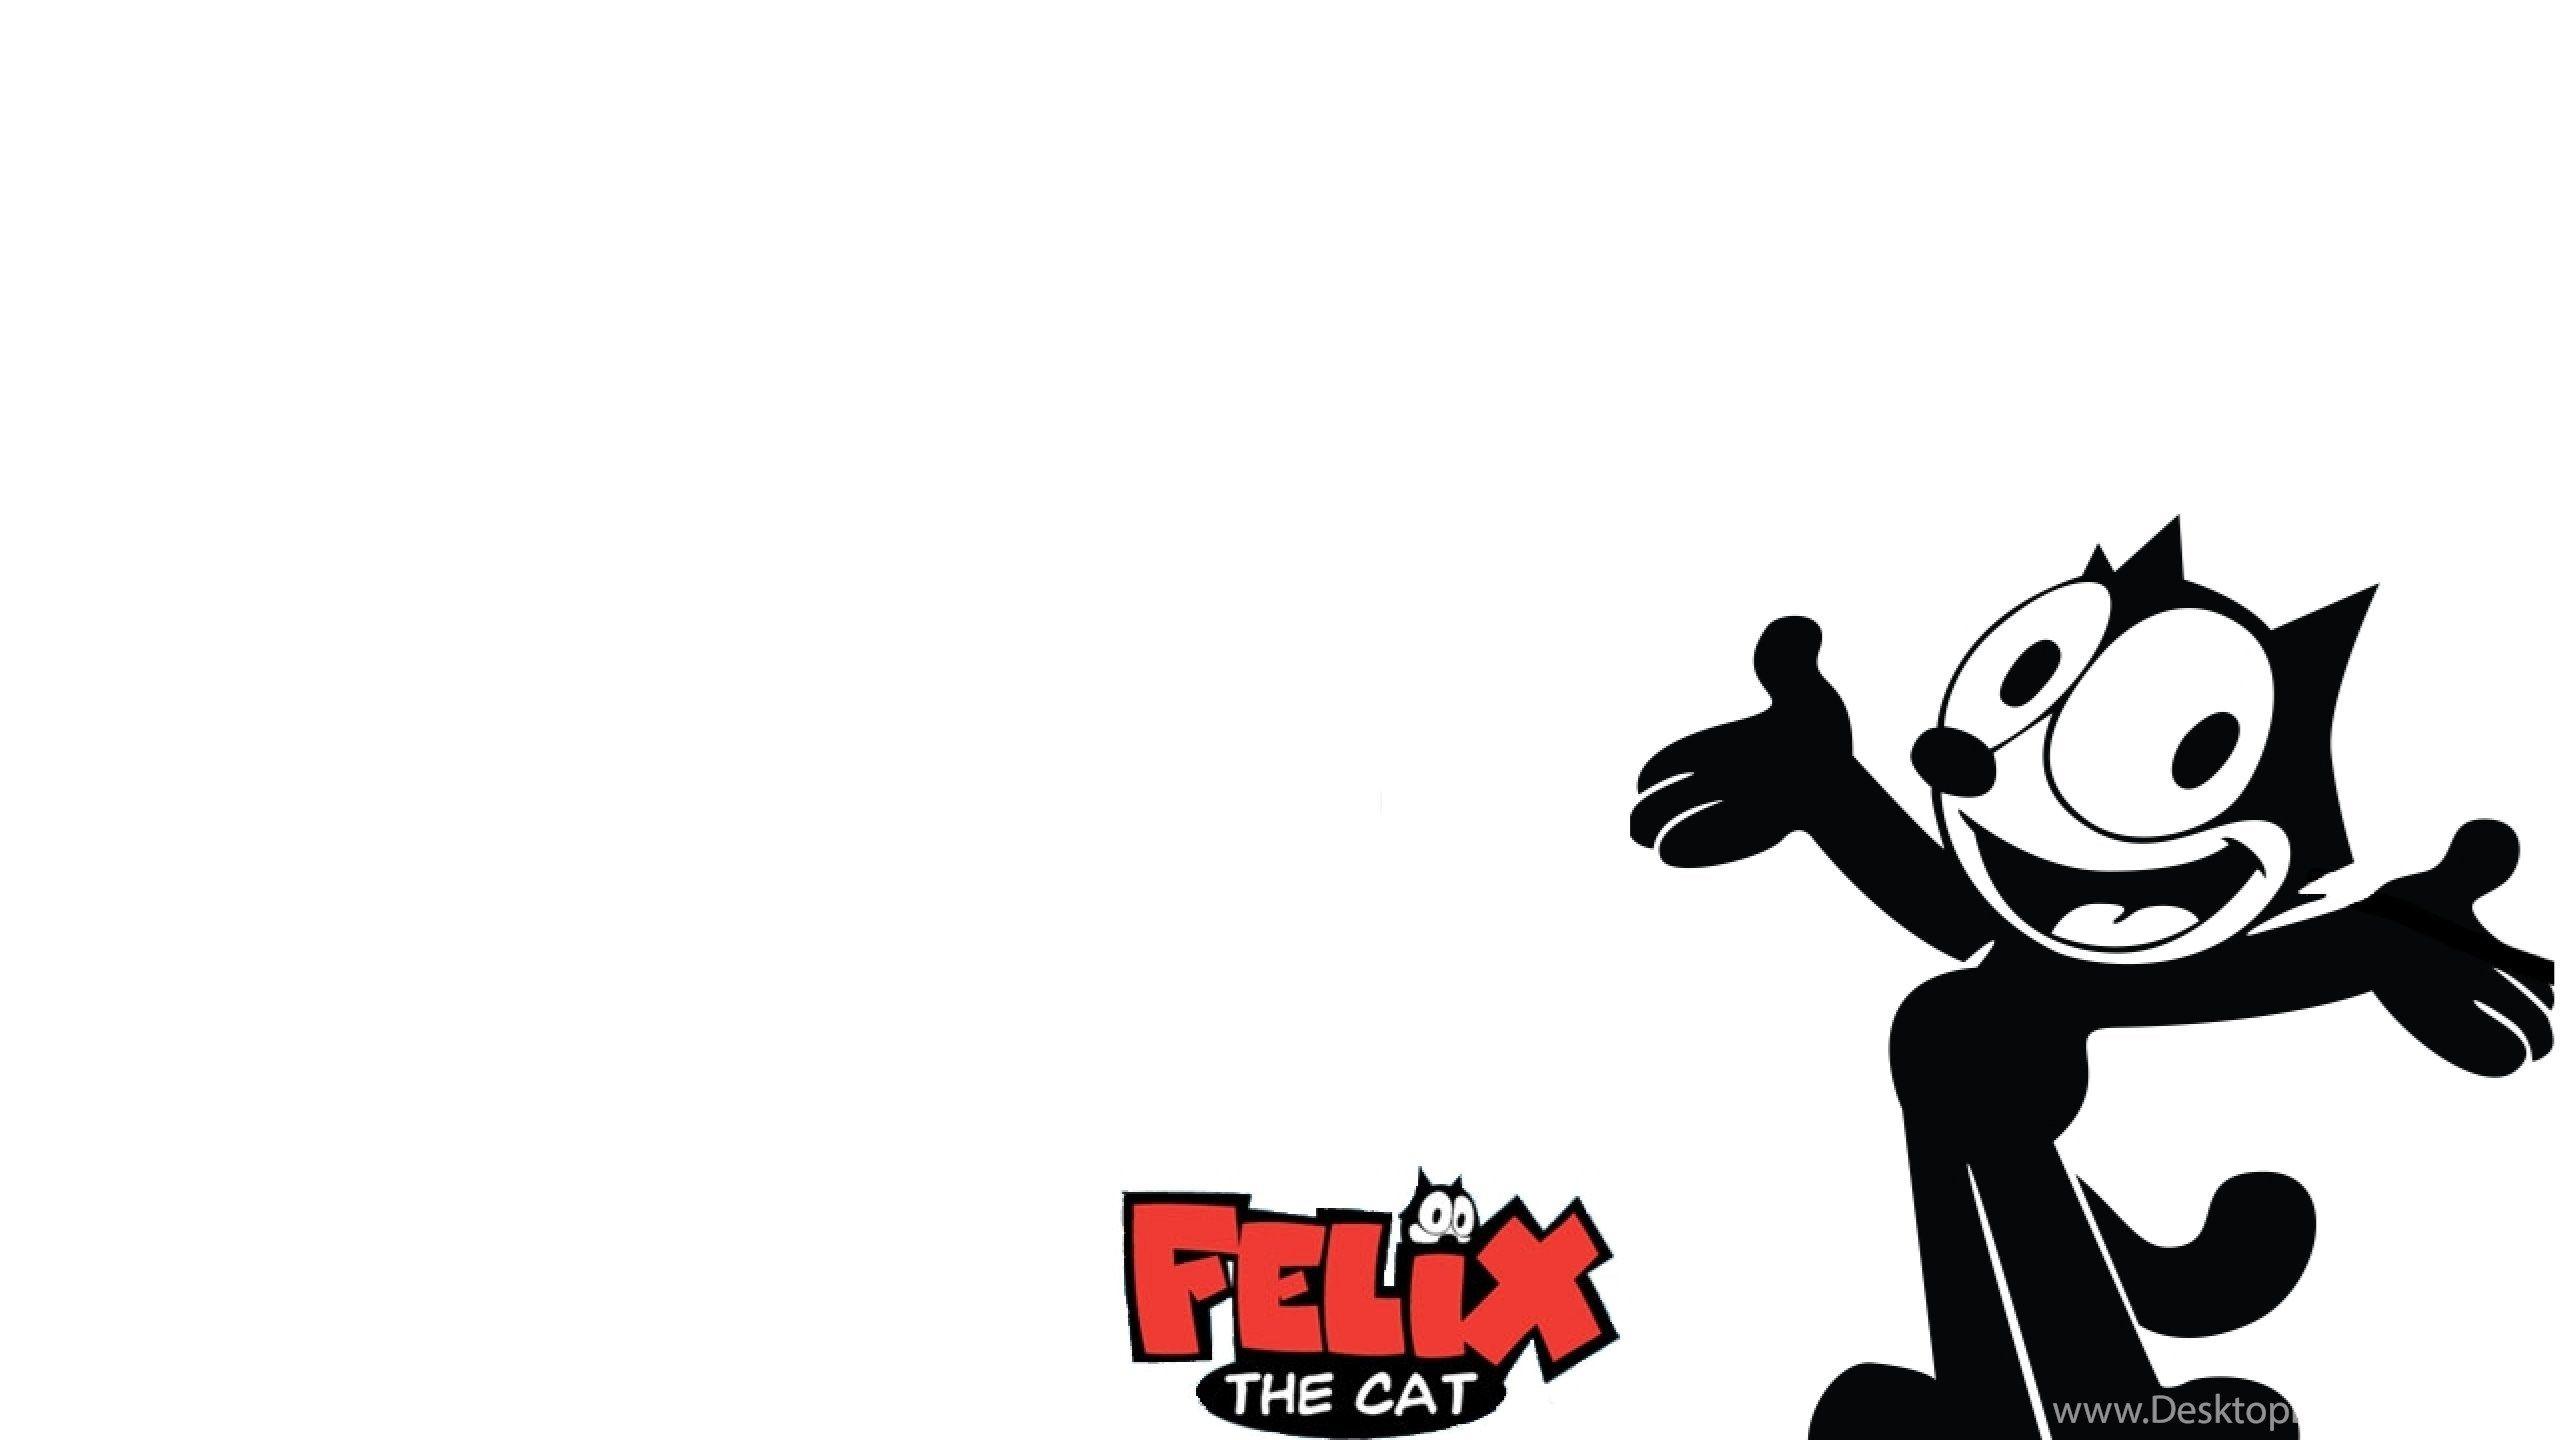 felix the cat wallpaper